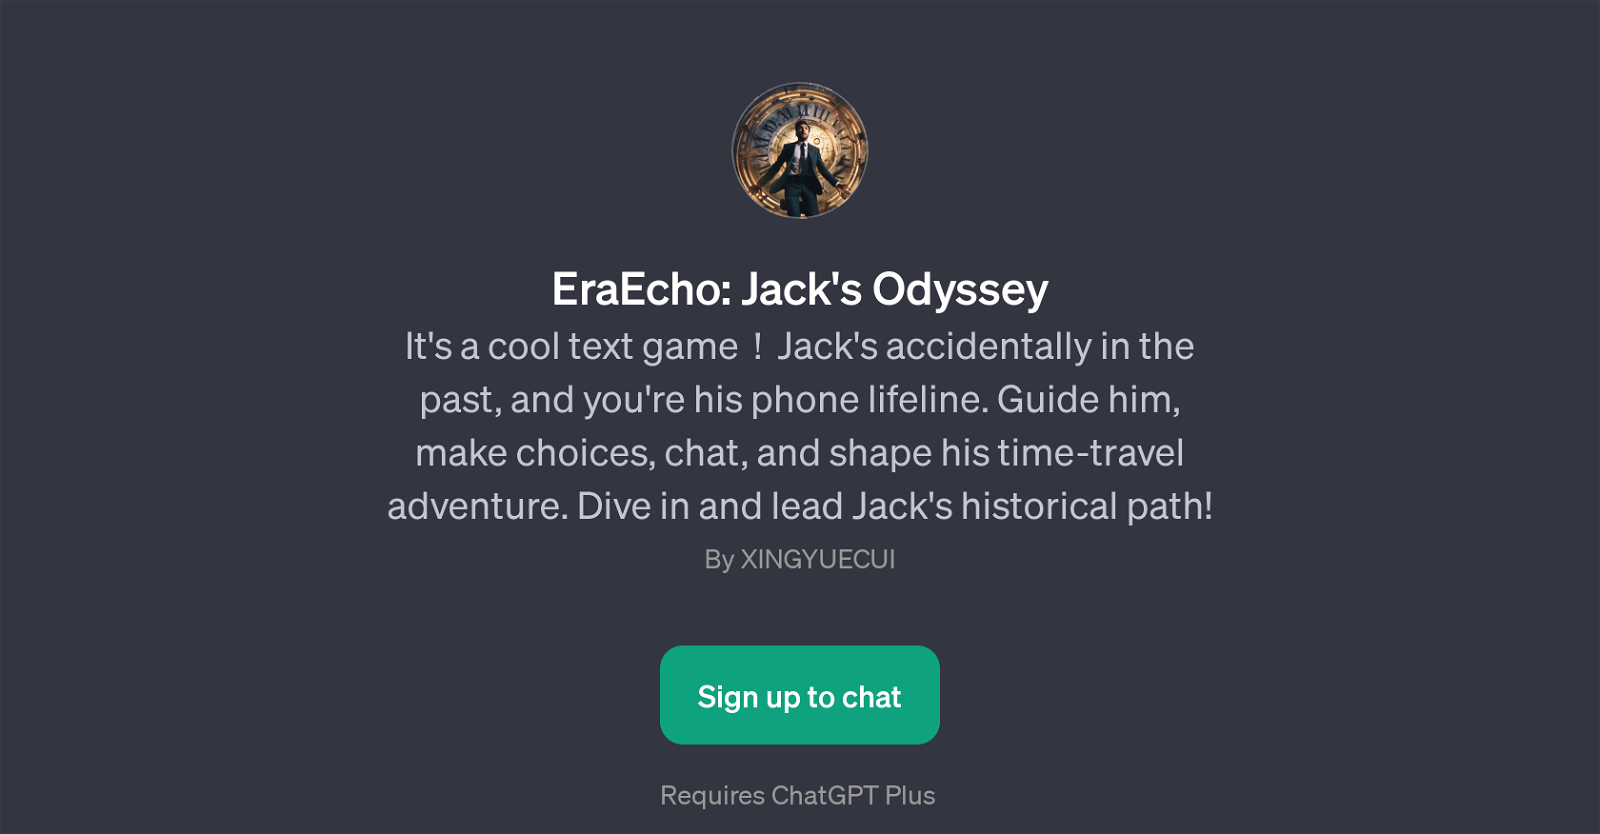 EraEcho: Jack's Odyssey website